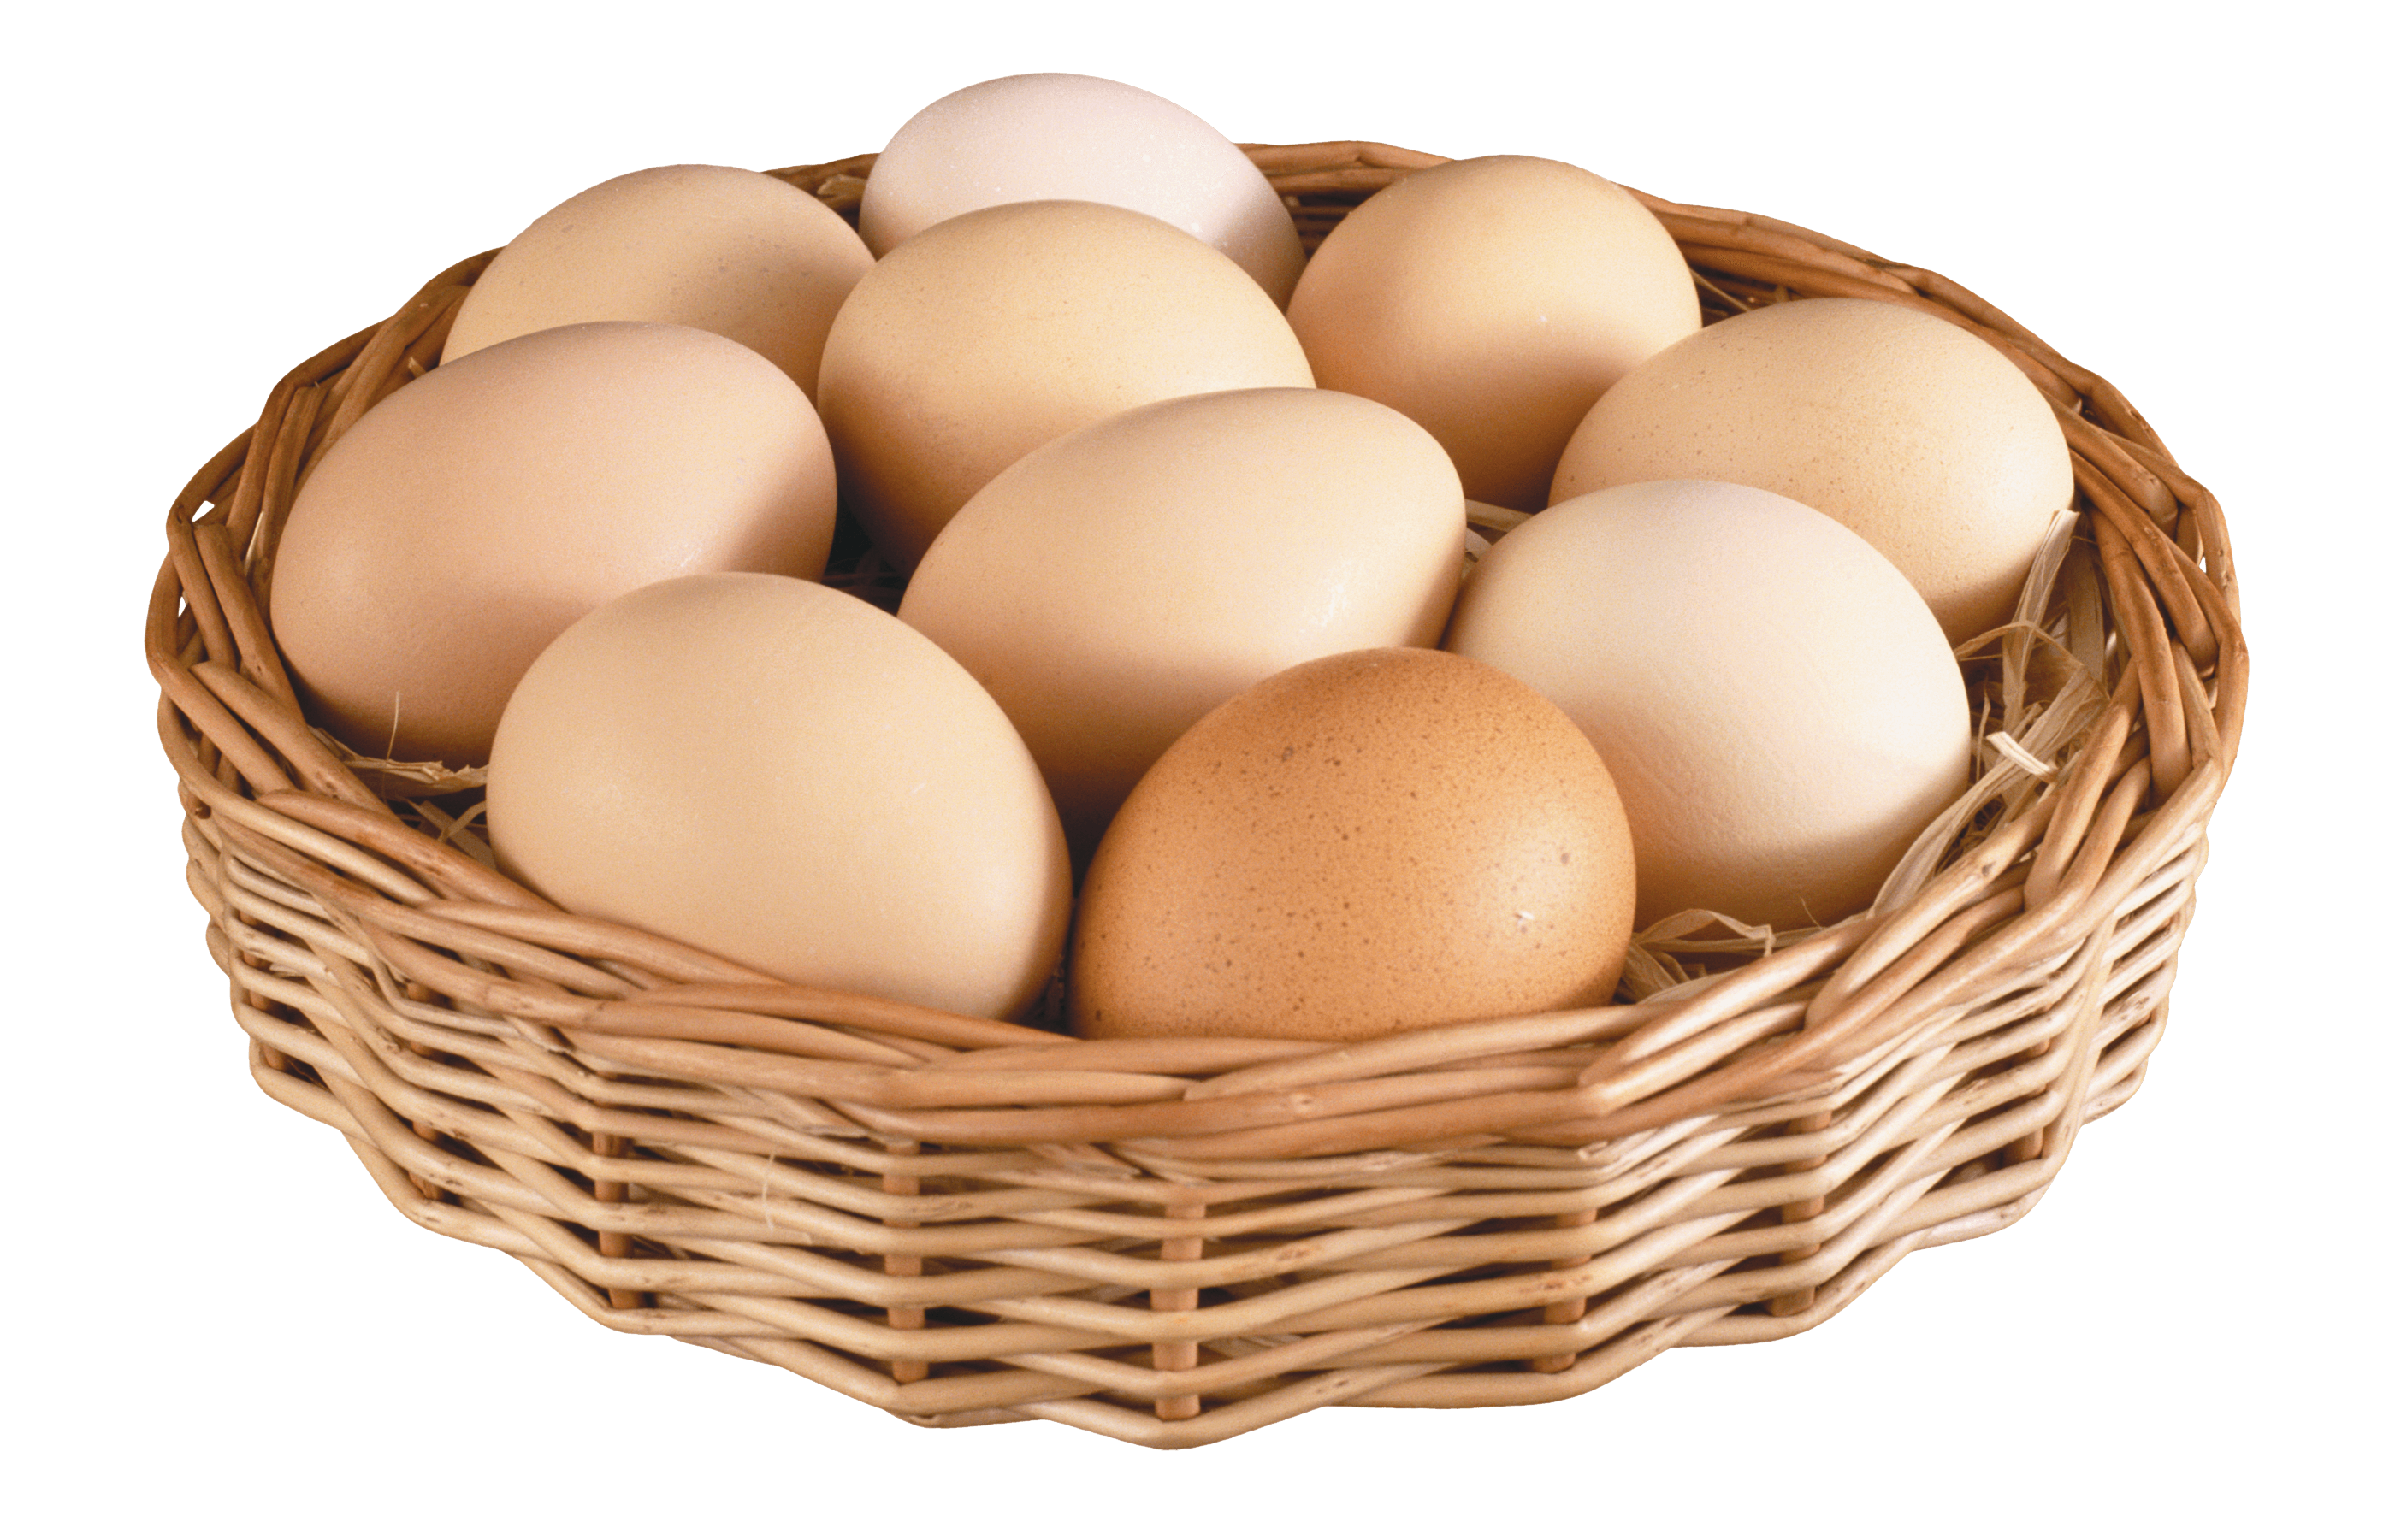 바구니에 담긴 계란